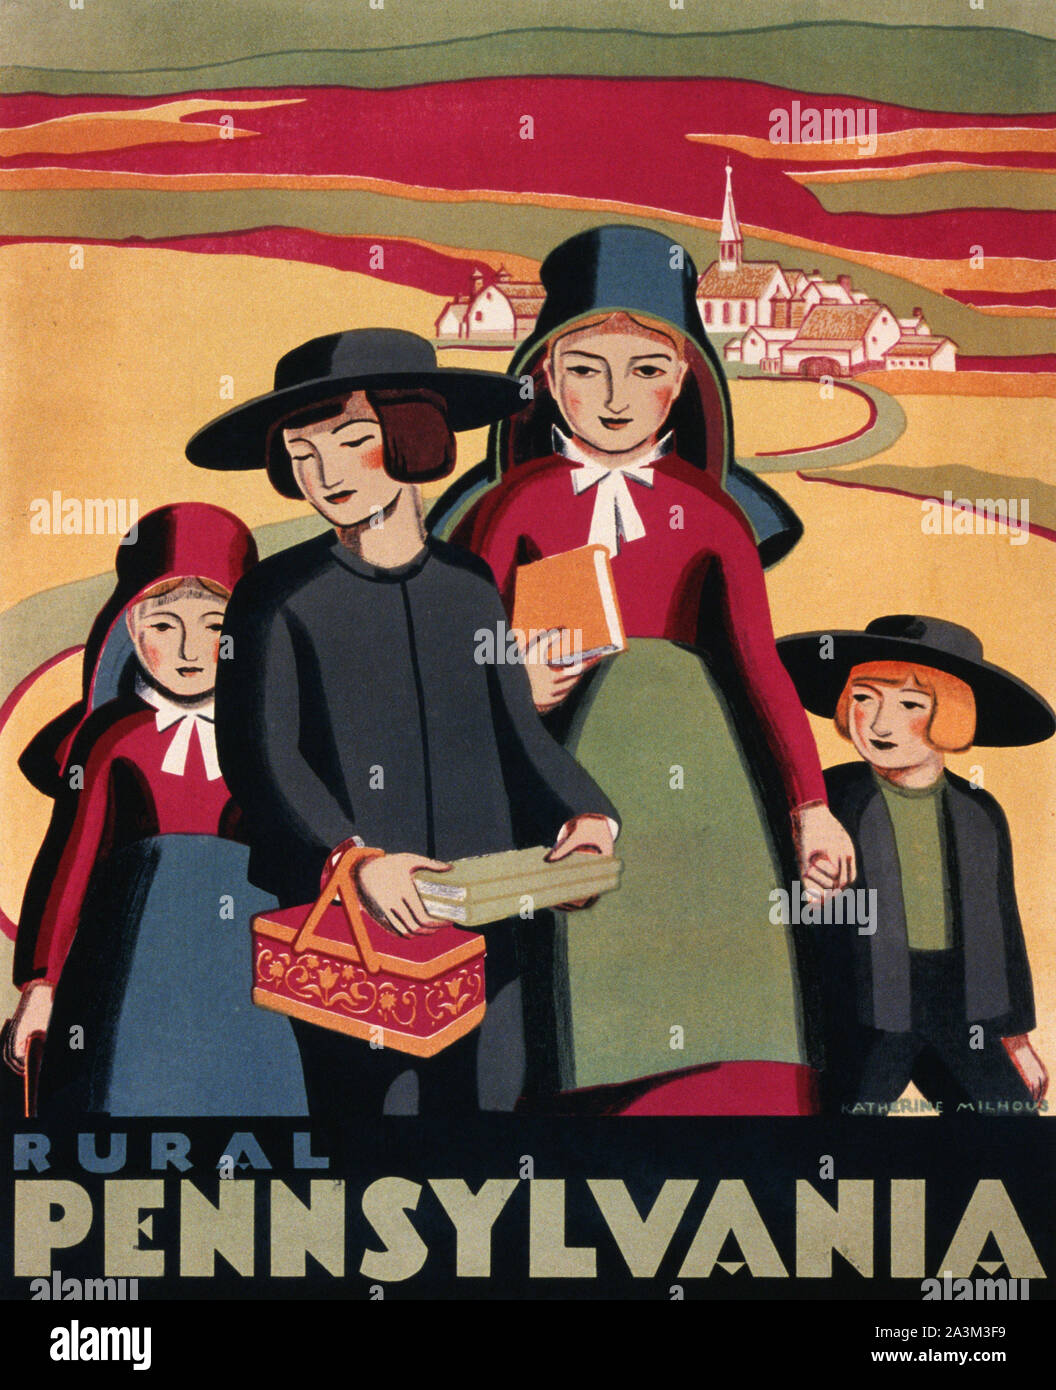 Rural de Pensilvania - Avance de trabajo Administración - Proyecto de arte Federal - Póster Vintage 1938 Foto de stock